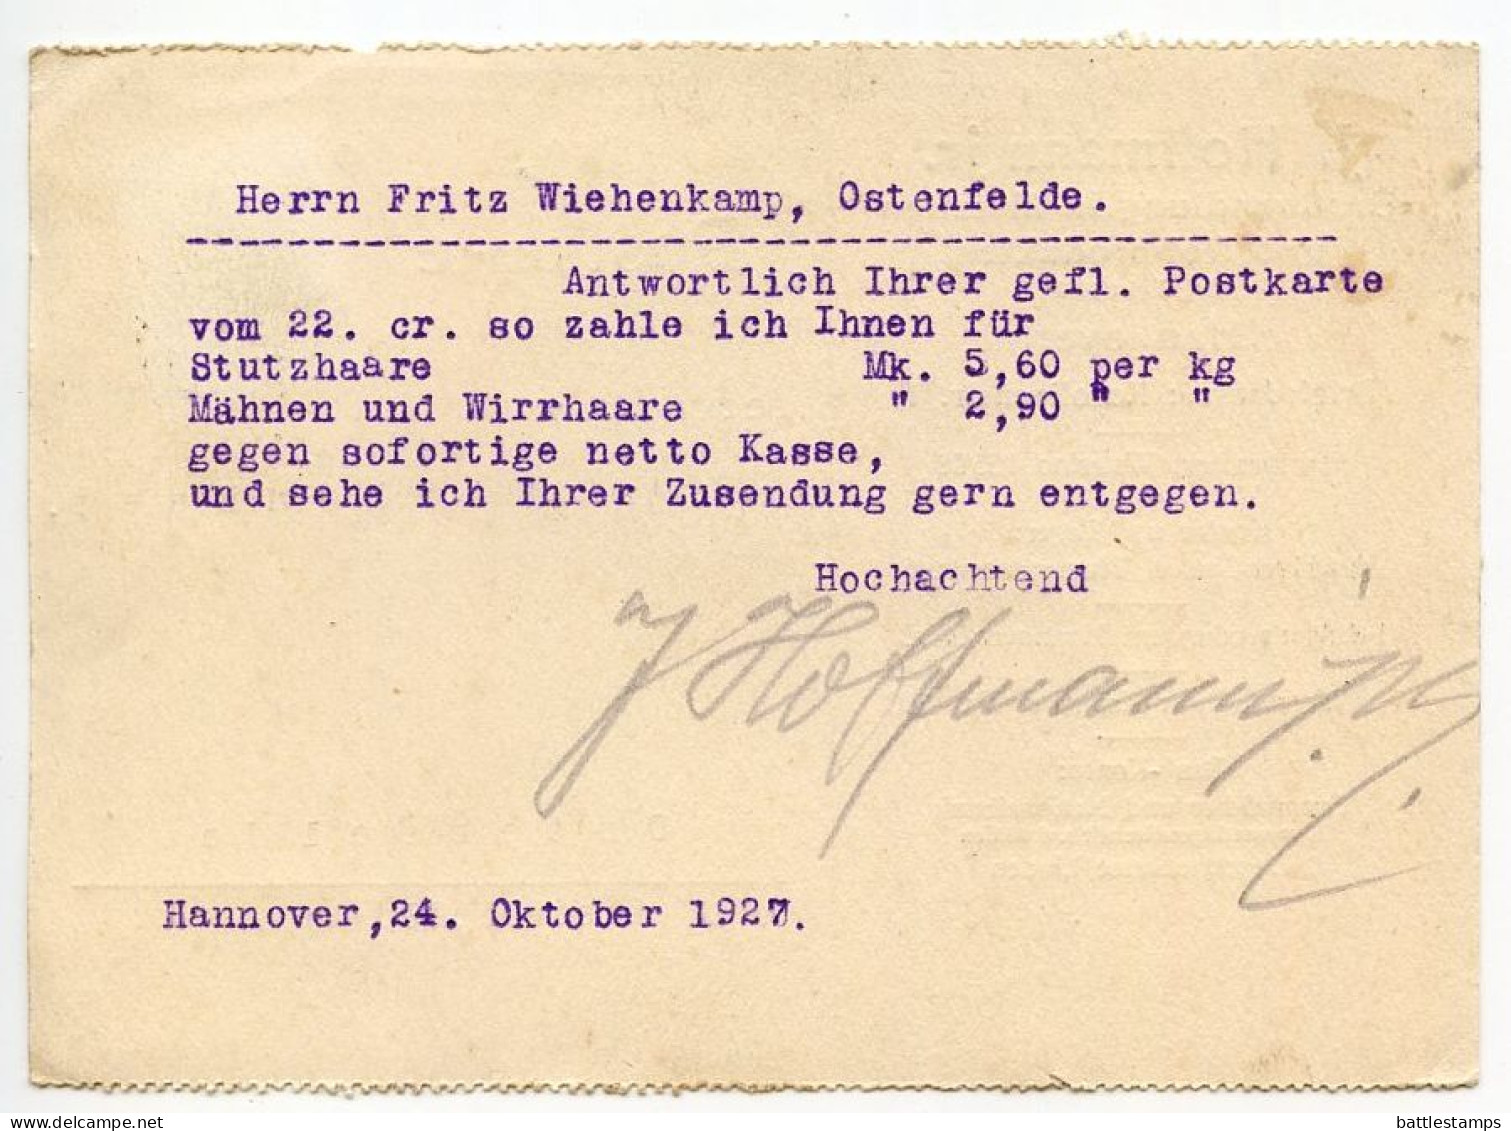 Germany 1927 Postcard; Hannover-Linden - J. Hoffman Jr, Großhandlung In Metallen Und Rohprodukten; 8pf. Beethoven - Brieven En Documenten